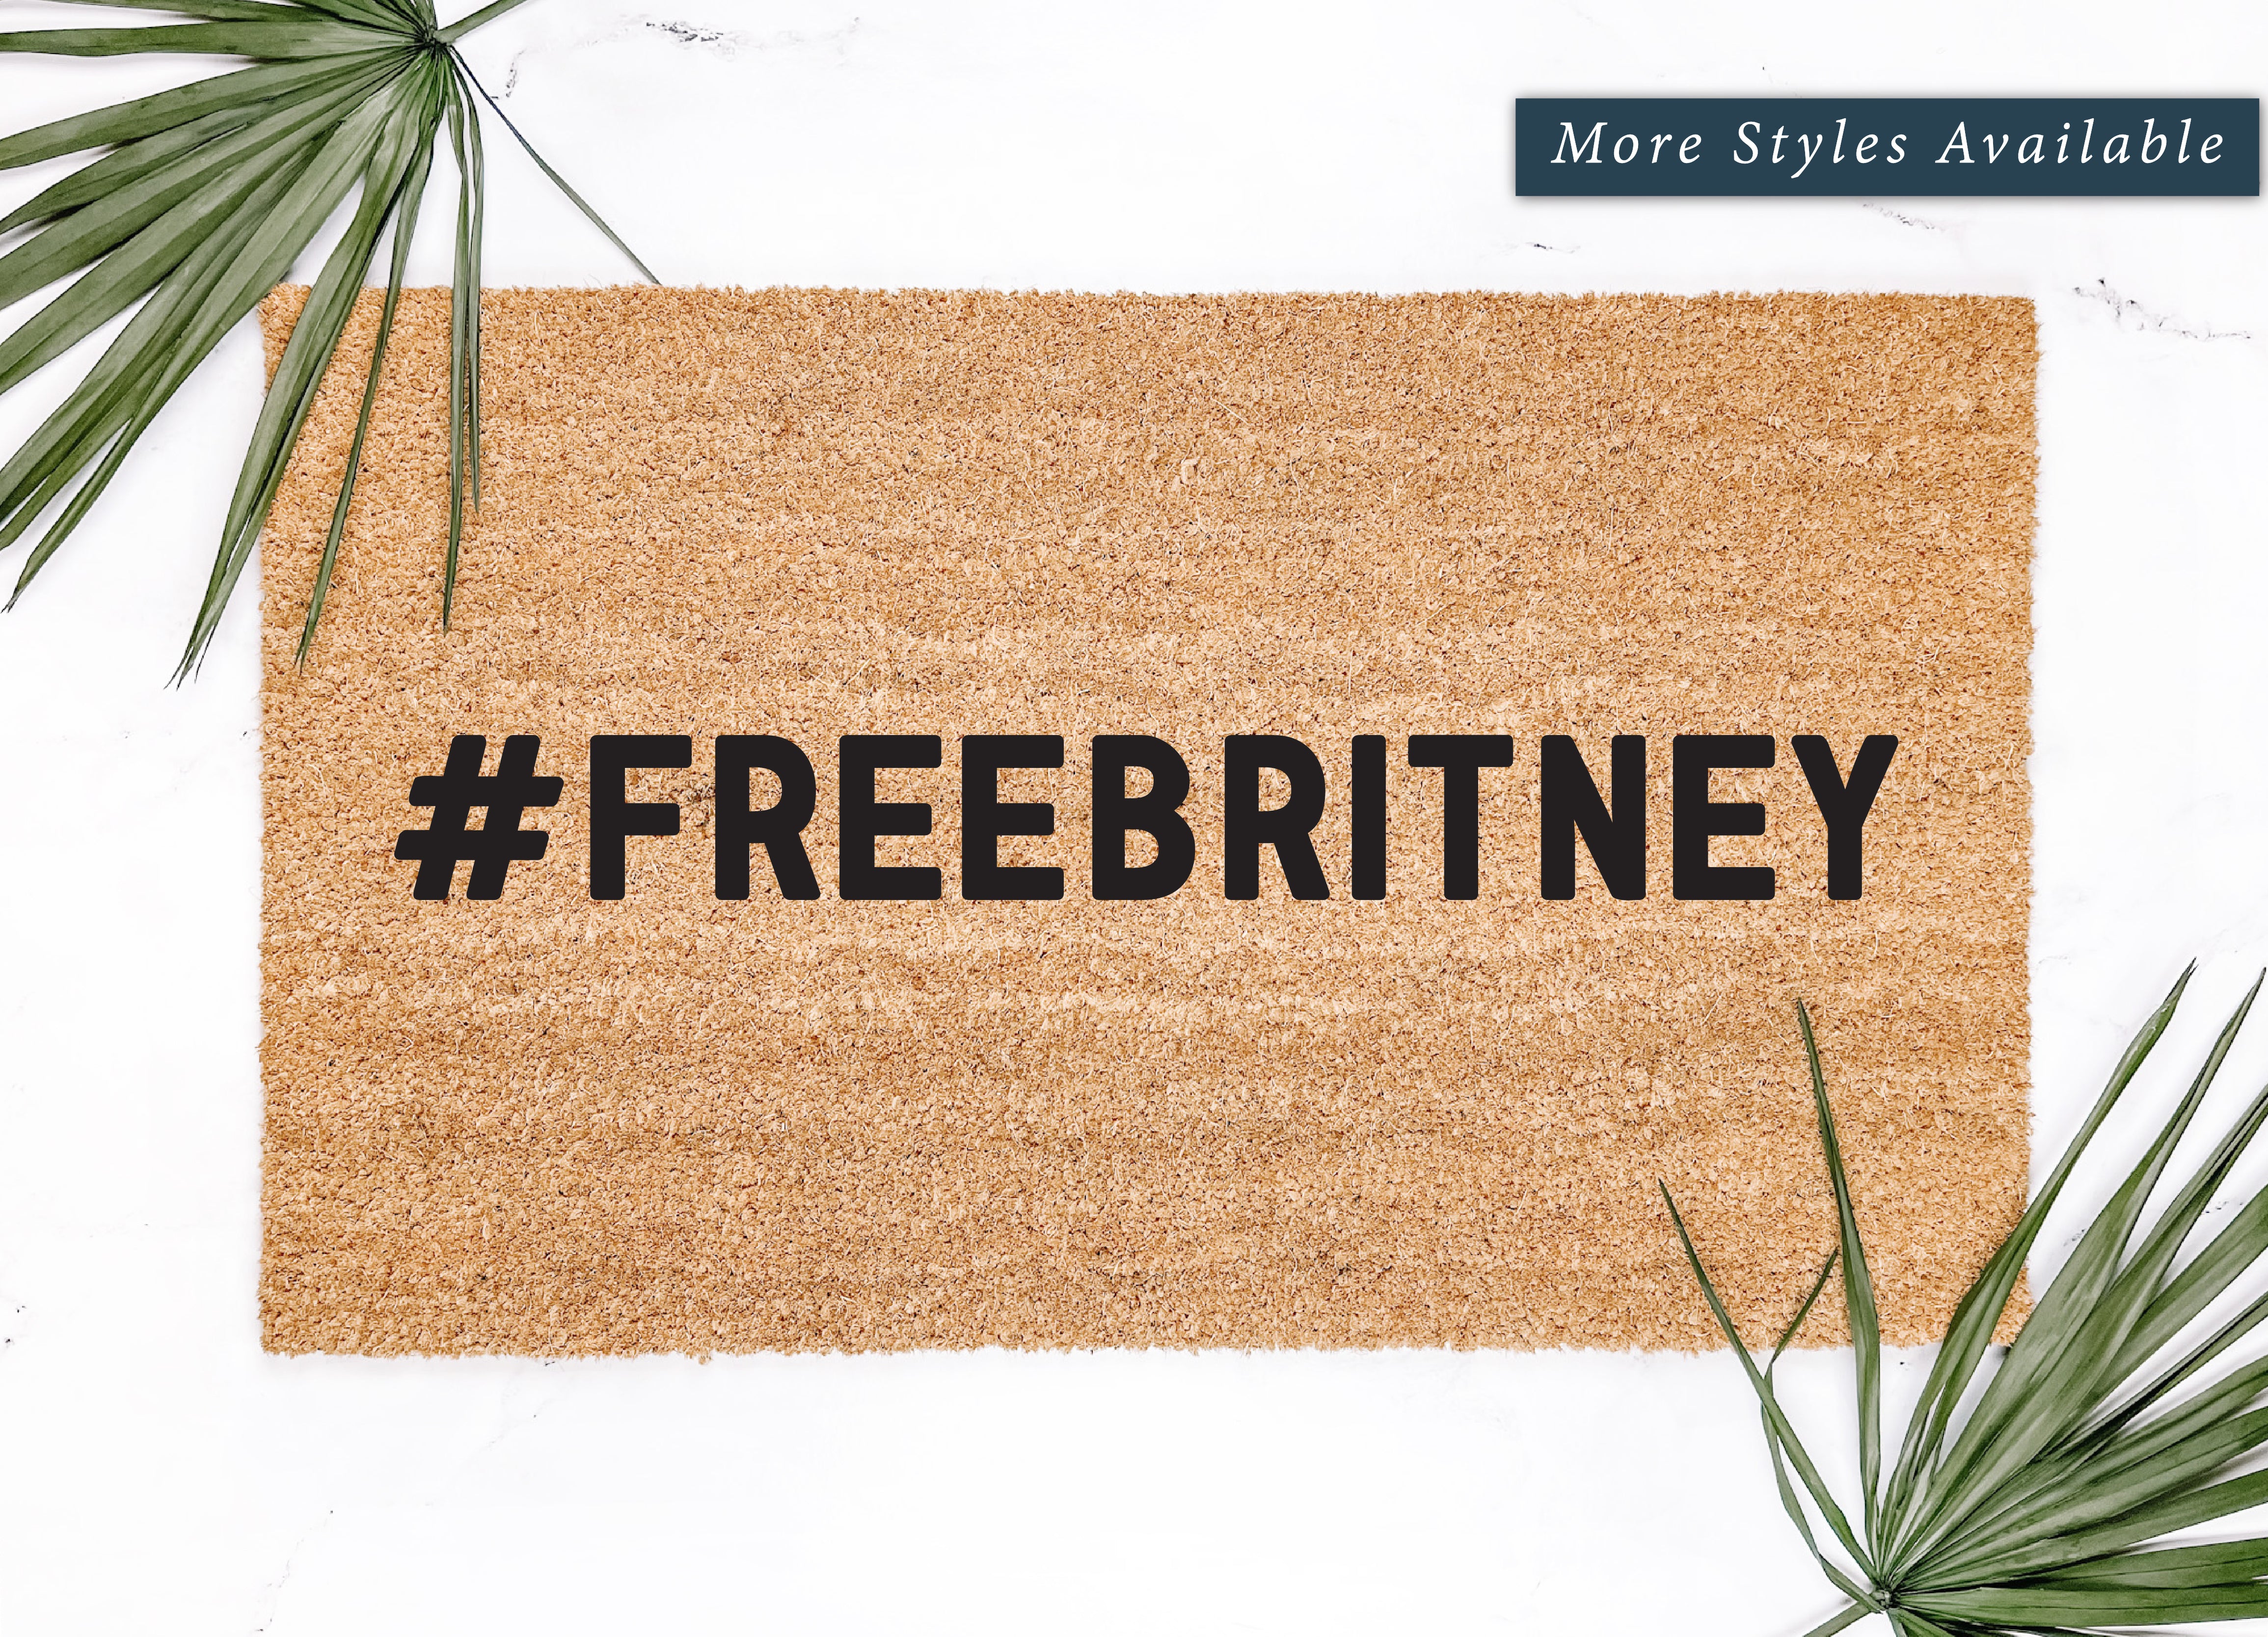 Free Britney Doormat